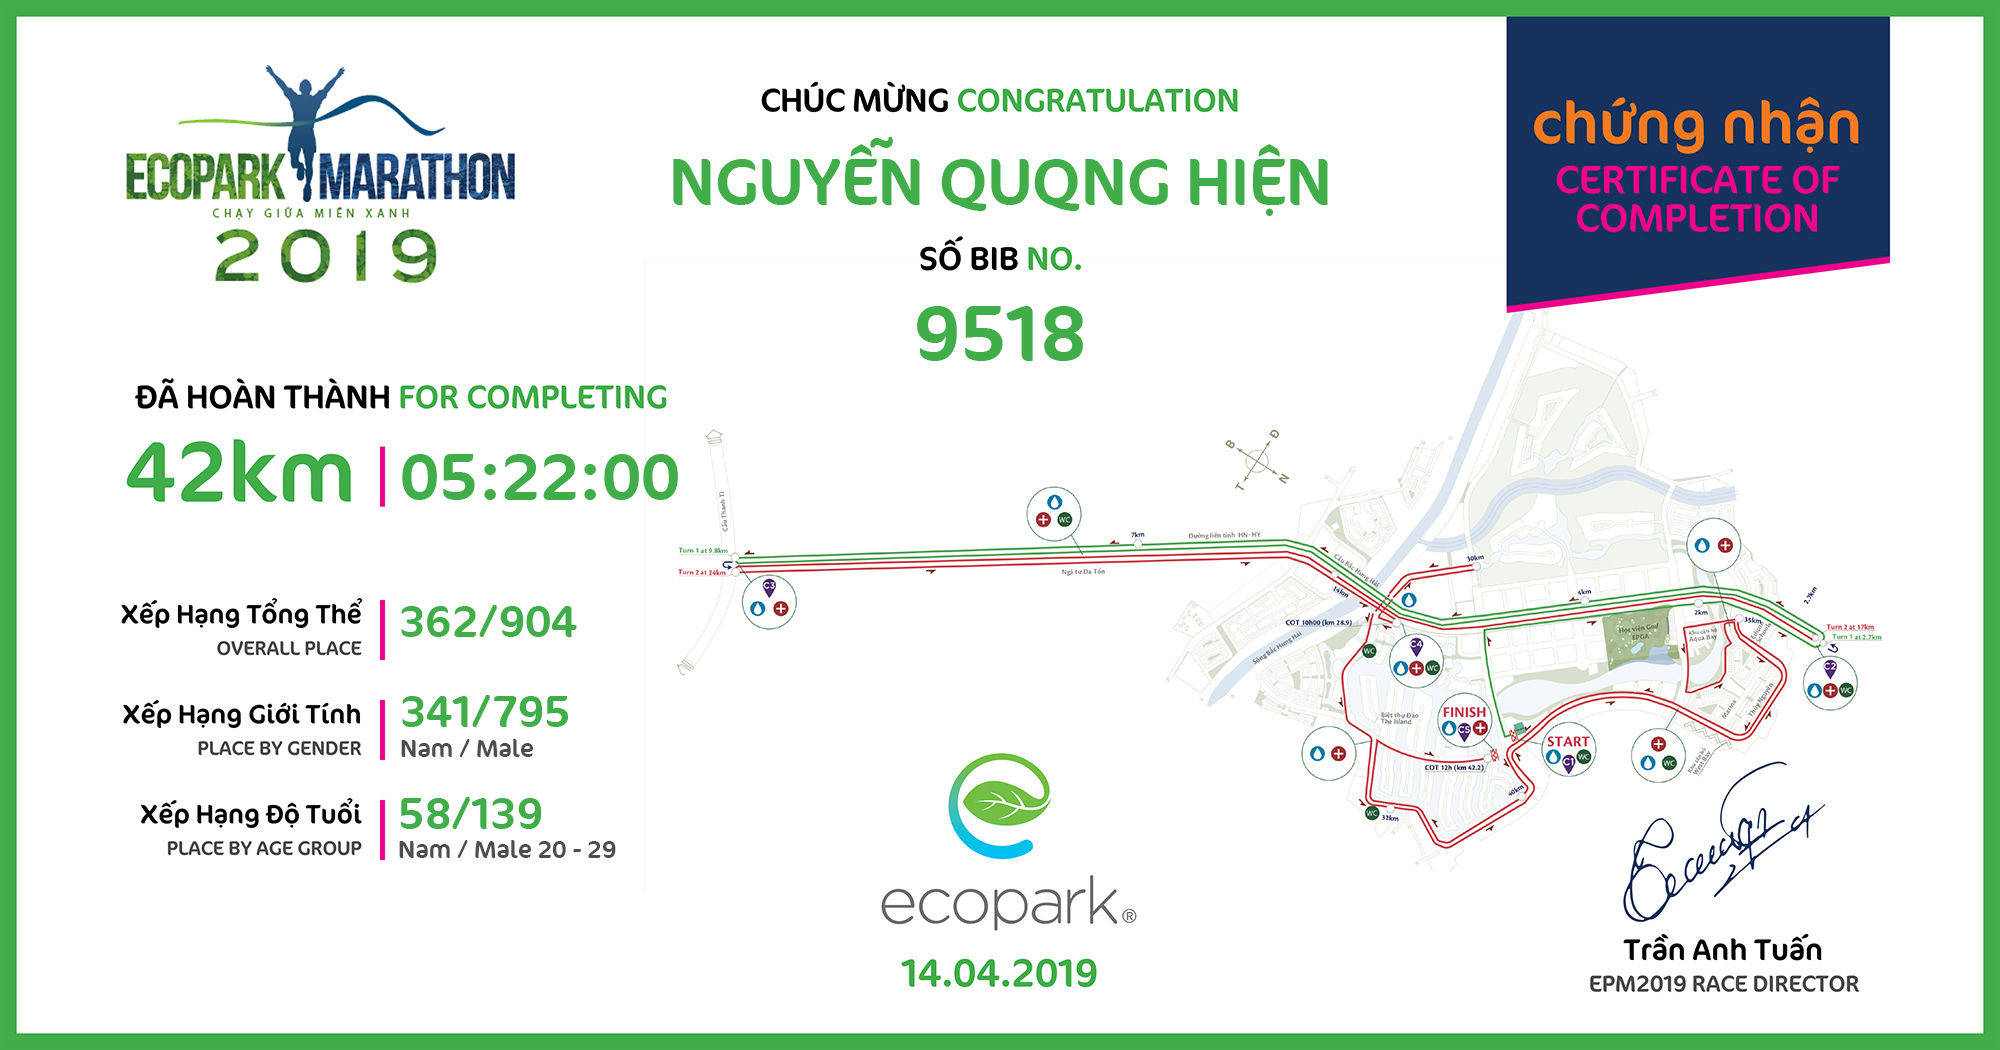 9518 - Nguyễn Quang Hiện